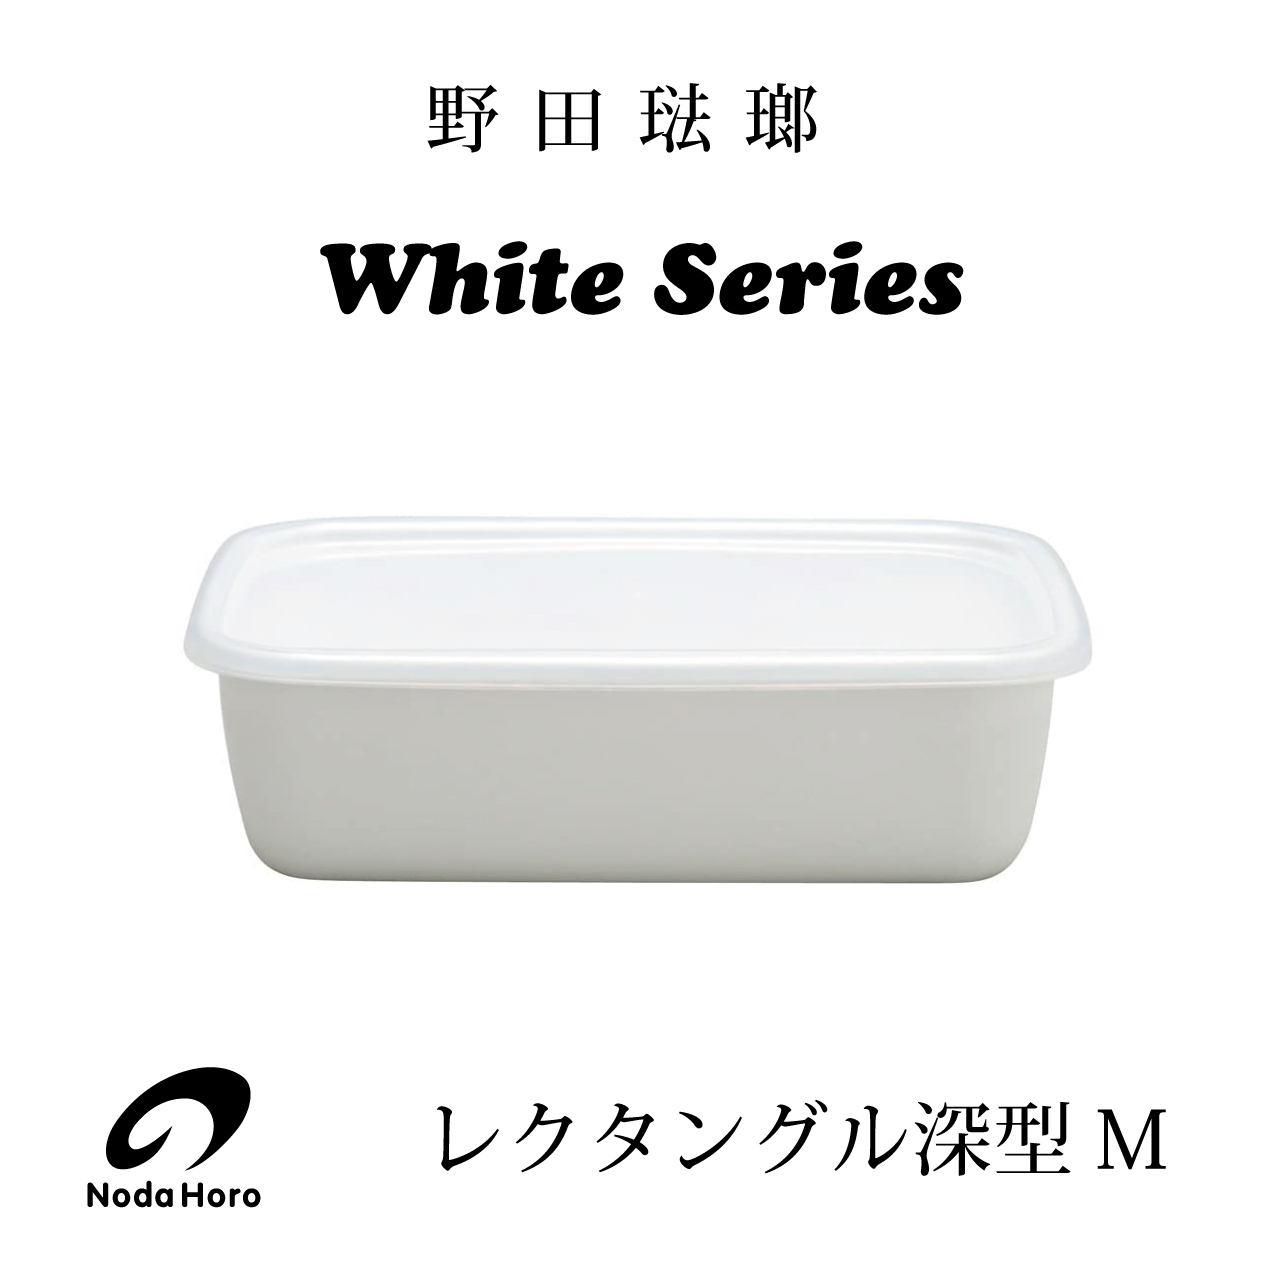 野田琺瑯 White Series レクタングル深型ｍシール蓋付 キッチン用品と雑貨の専門店 Nabestore